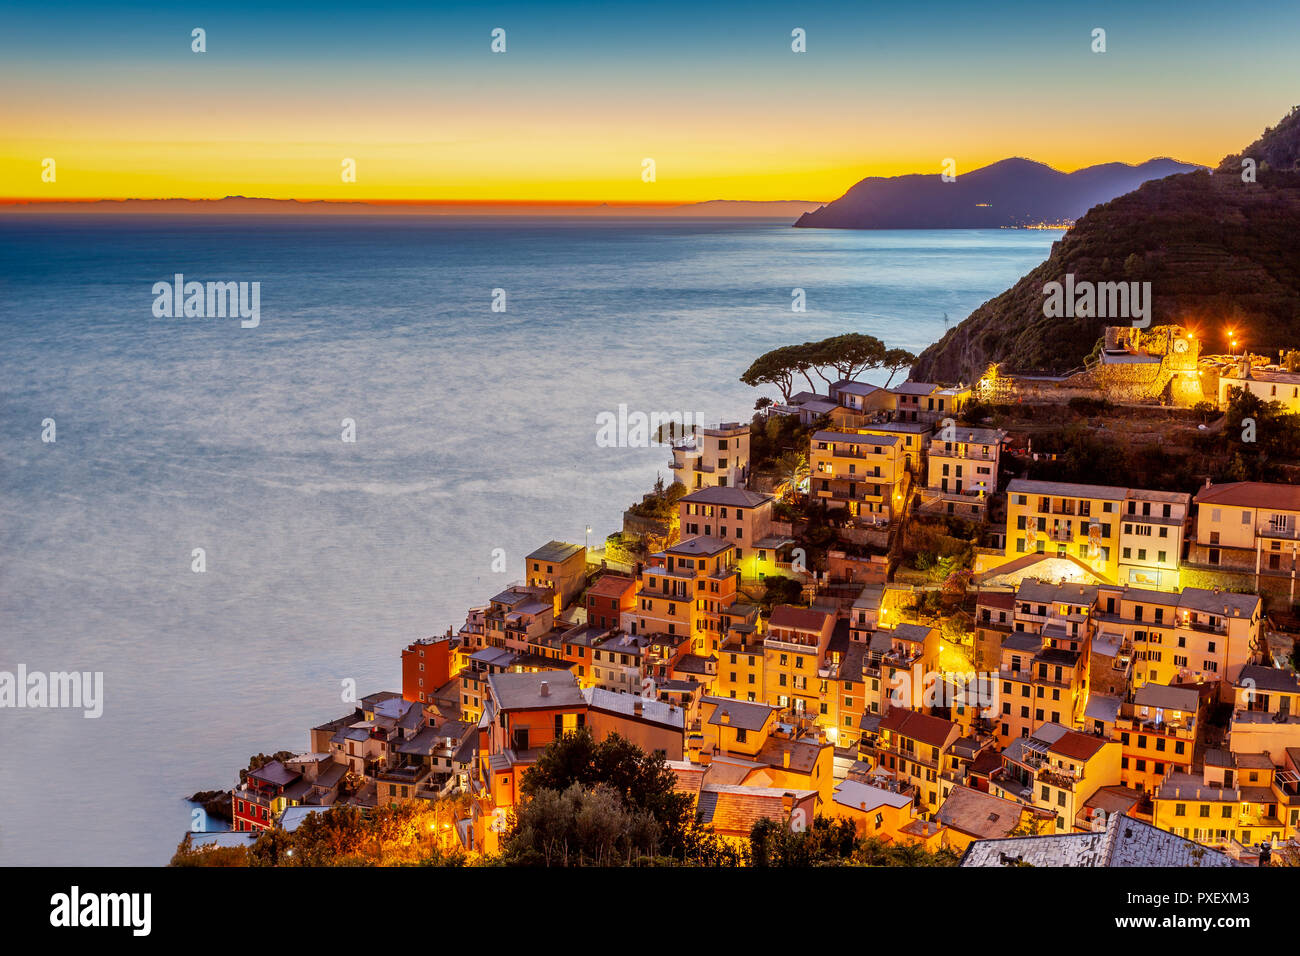 Riomaggiore fisherman village at sunset (Cinque Terre, Italy) Stock Photo